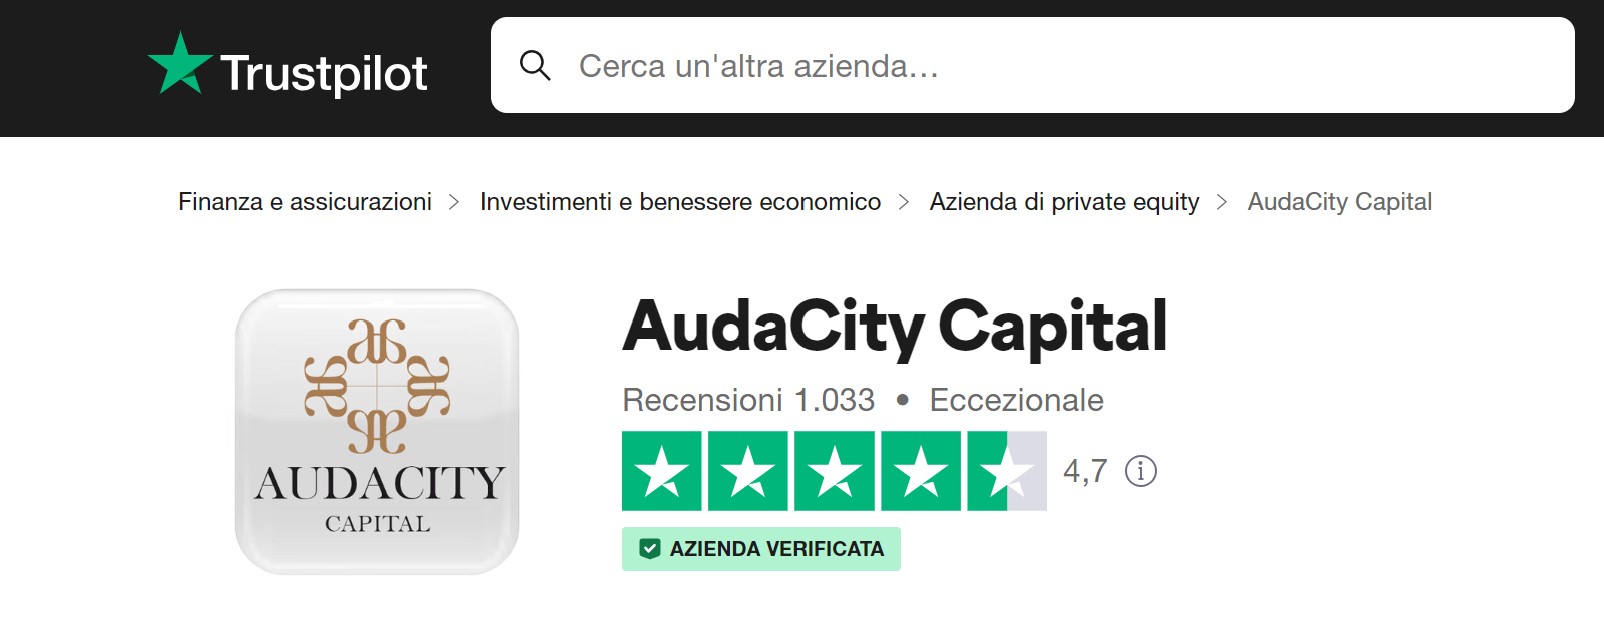 AudaCity Capital recensioni